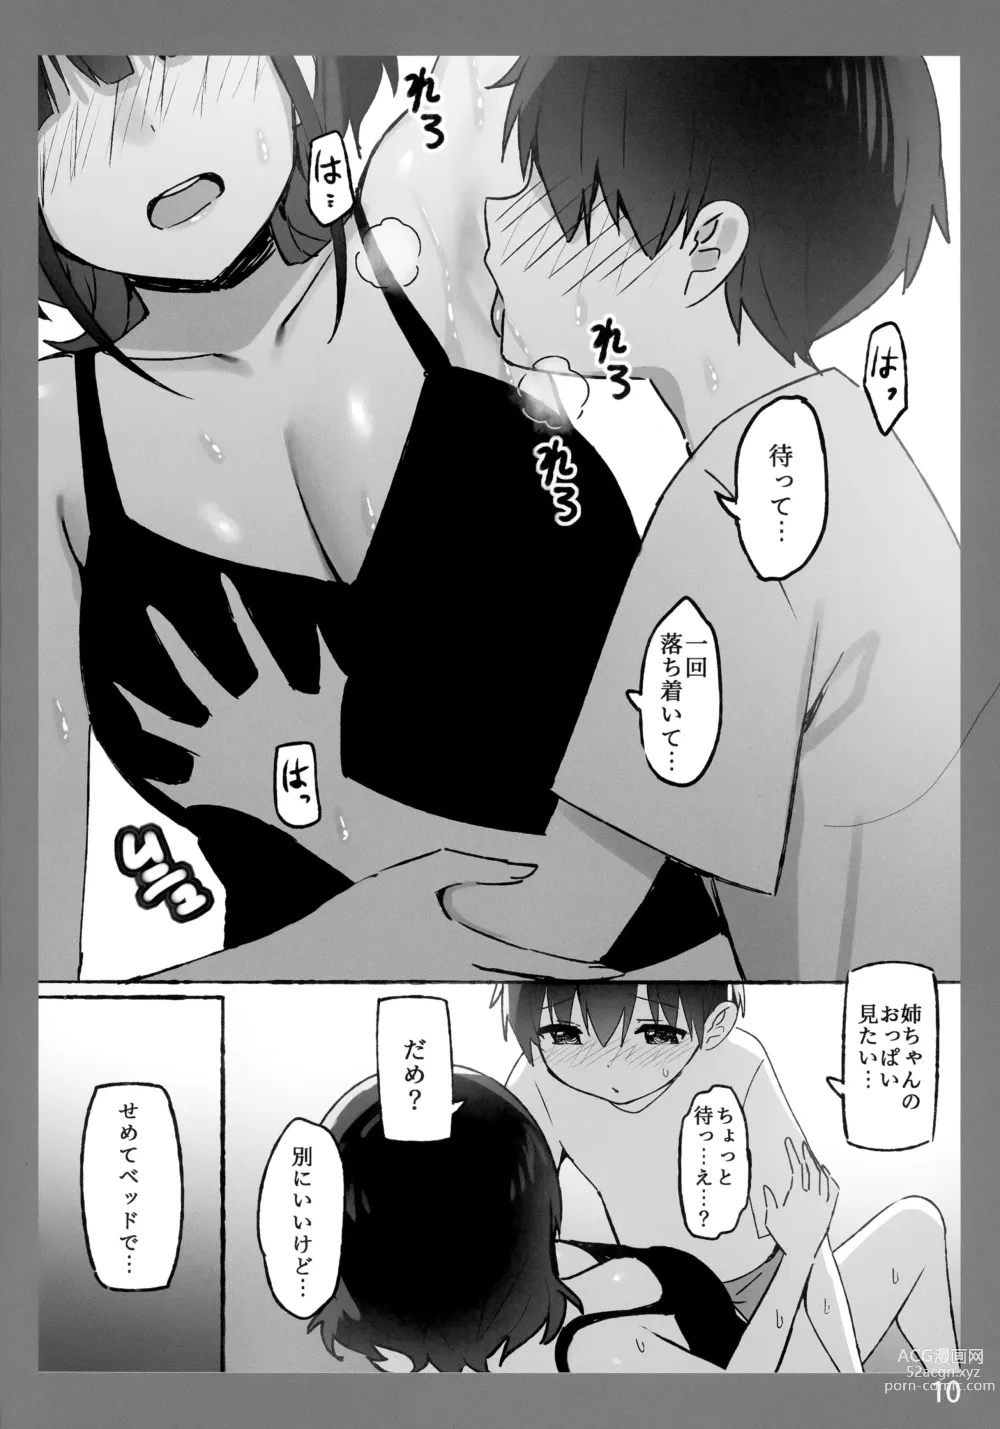 Page 10 of doujinshi Onee-chan to Torokeru Kimochi SP 2